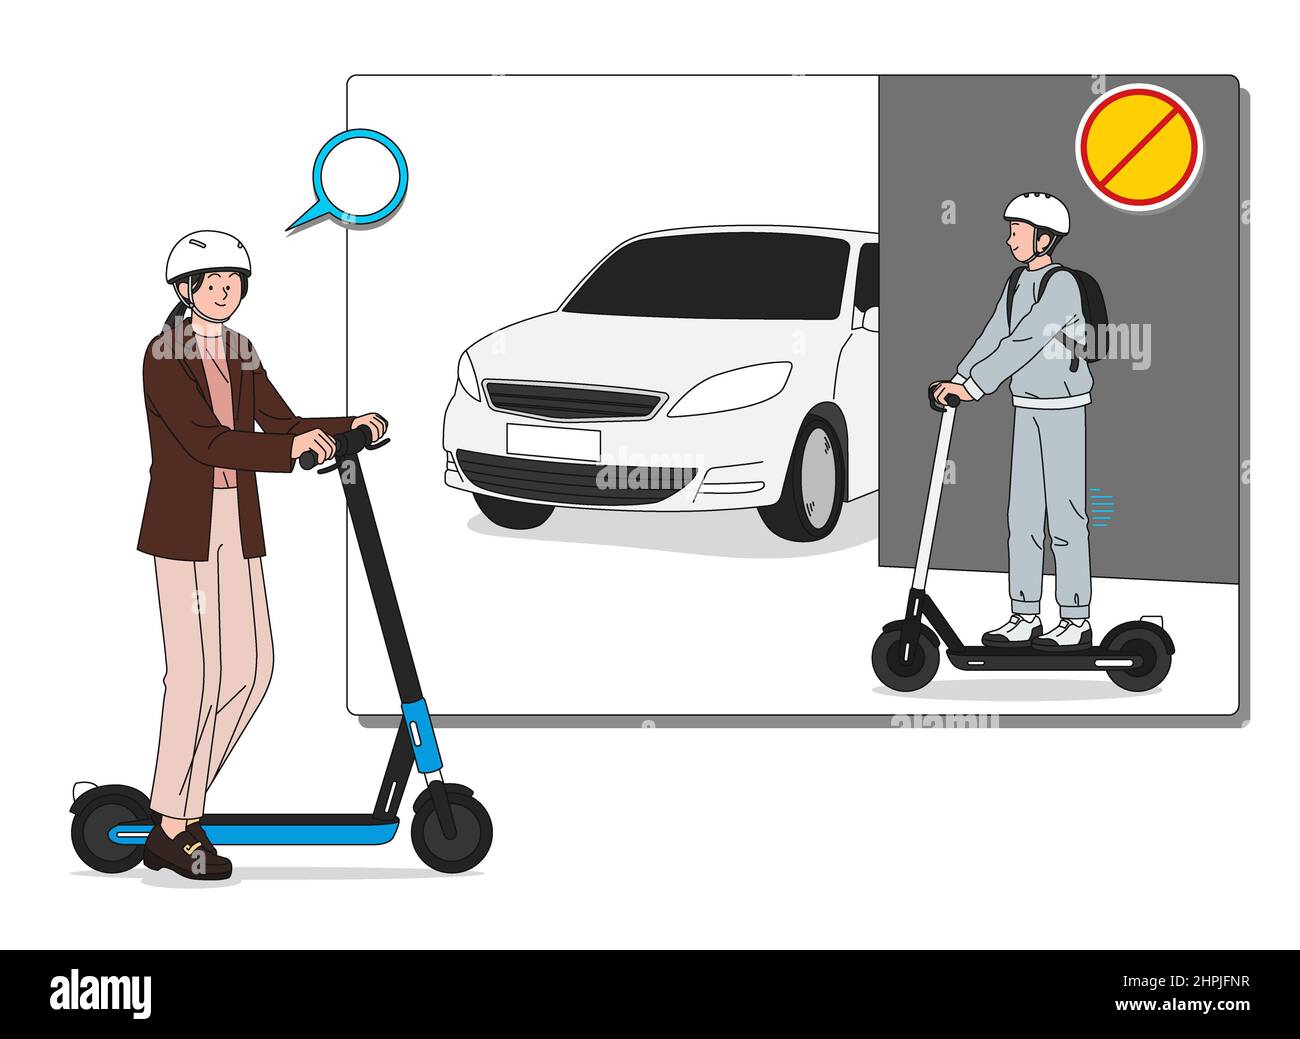 réglementation relative à la sécurité des scooters électriques, ralentissez dans l'allée Banque D'Images